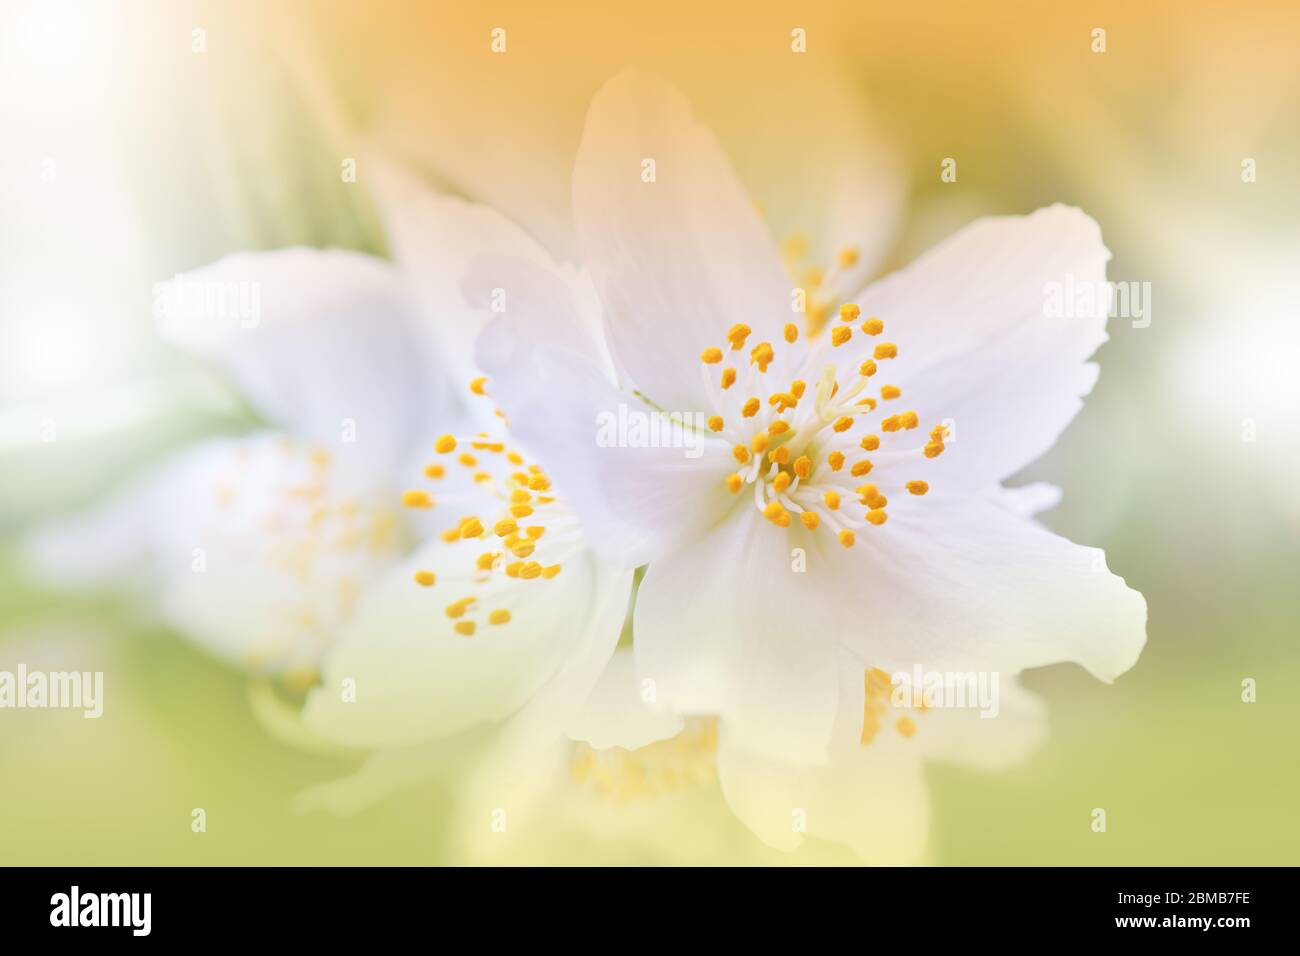 Schöne Natur Hintergrund.Florale Kunst Design.Abstrakte Makro-Fotografie.Blühende Frühlingsblumen.Jasminblüte Baum.Hochzeit Einladung.Weiße Farbe. Stockfoto